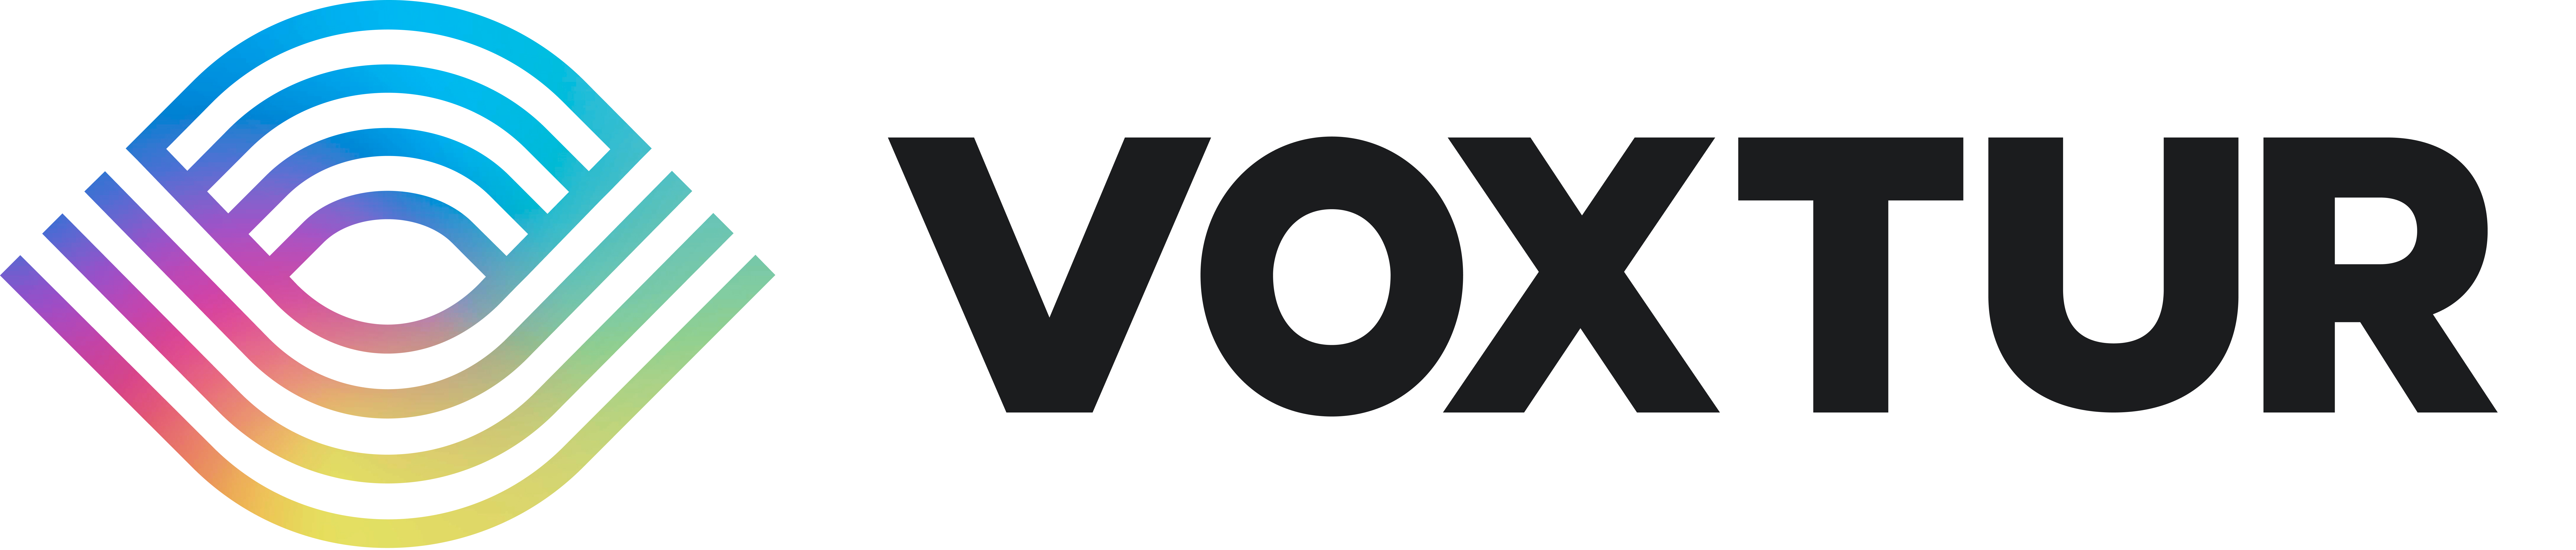 Voxtur Appraisal Services Logo